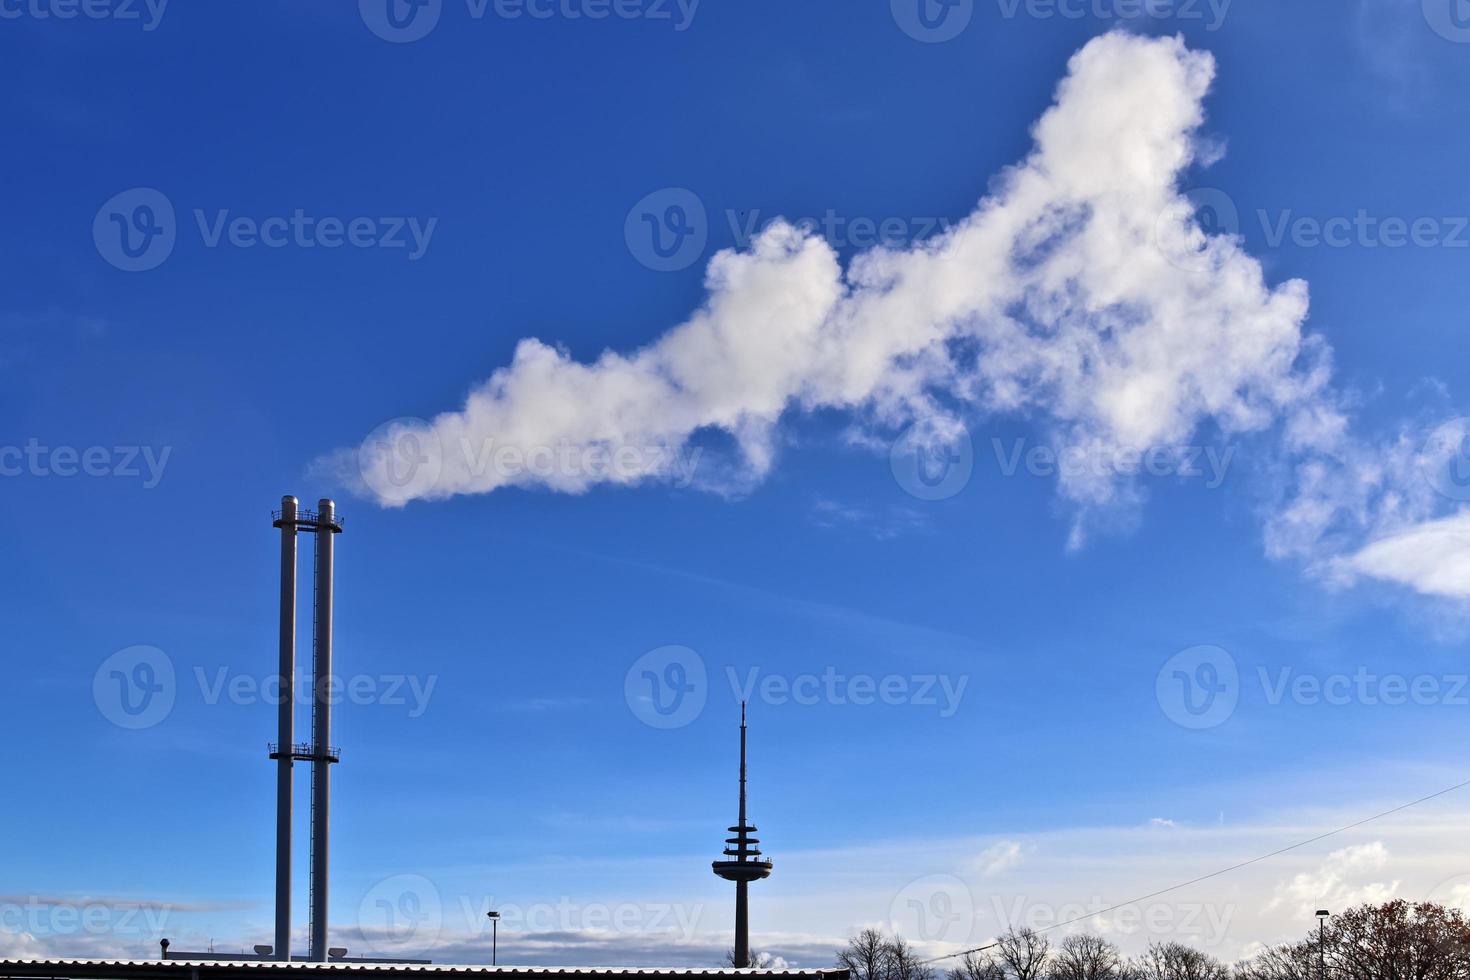 contaminación industrial de las chimeneas de fábrica en un cielo azul profundo foto